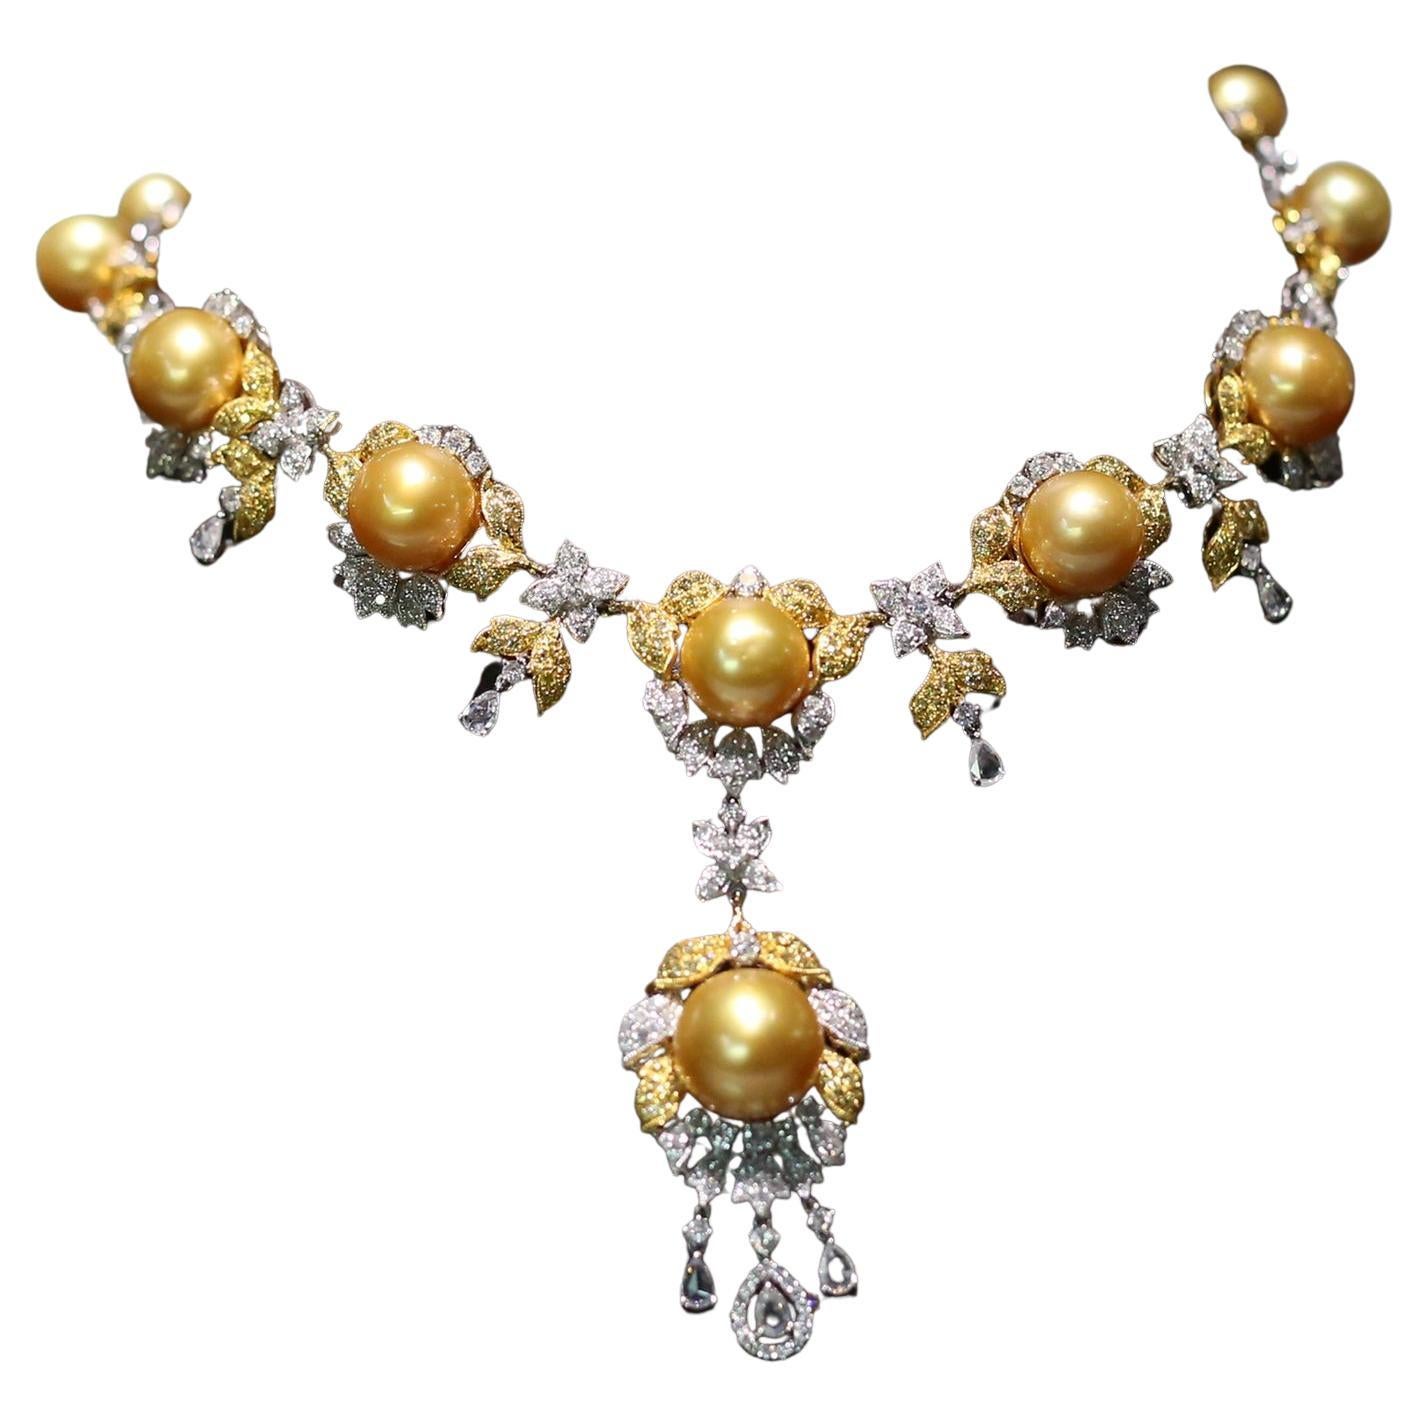 Superbe collier en or 18 carats avec perles des mers du Sud et diamants jaunes de couleur jaune fantaisie, neuf avec étiquette, 9 000 $